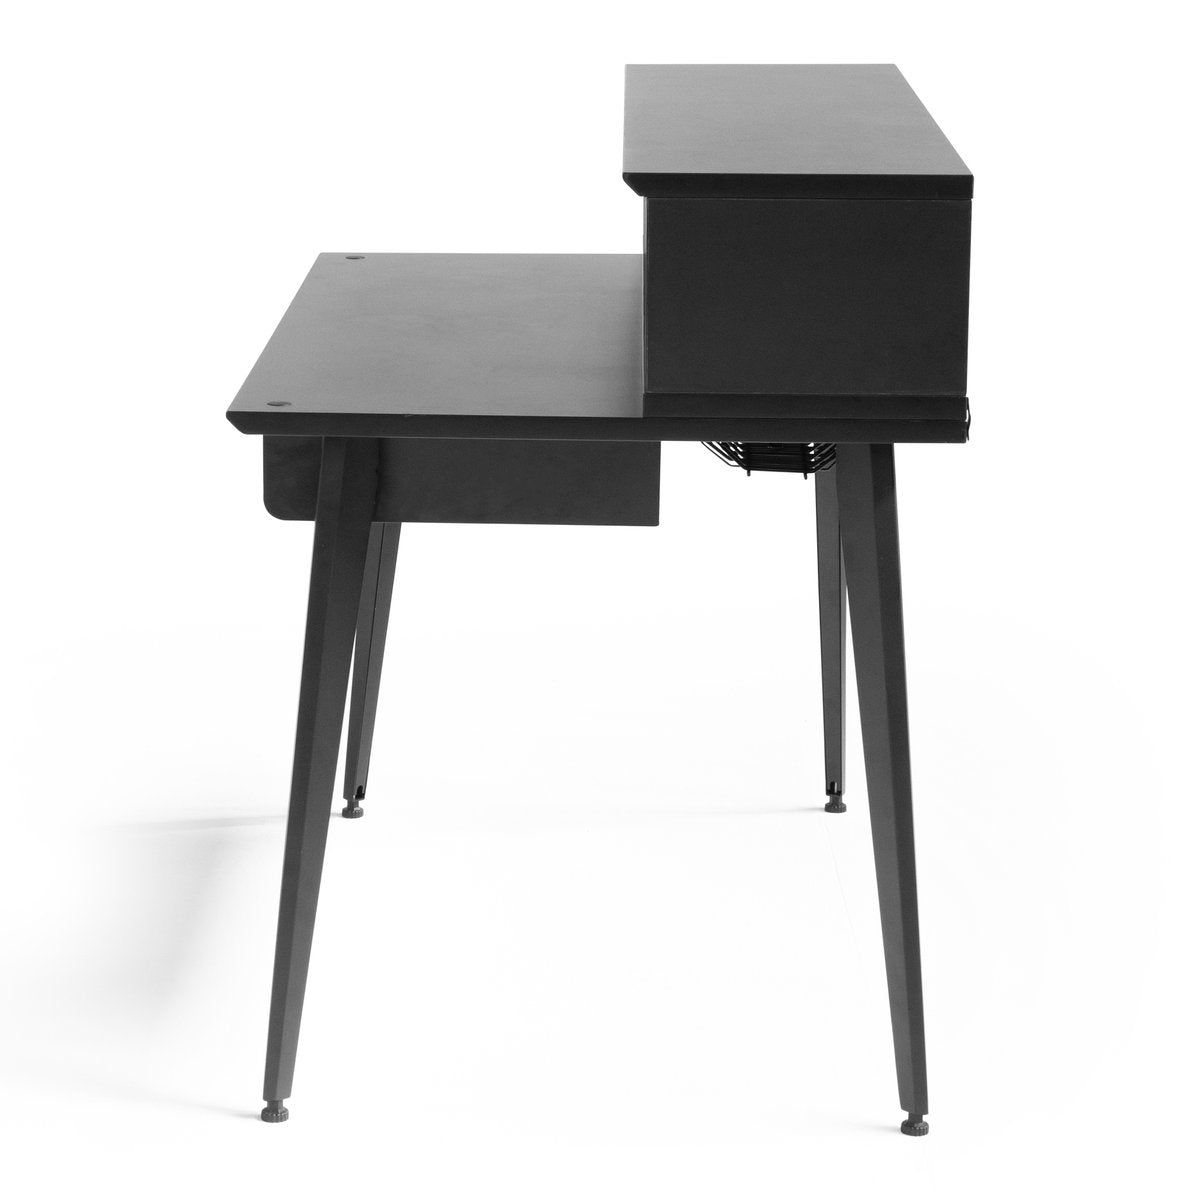 Gator Frameworks Elite Series Furniture Desk - Black, View 5